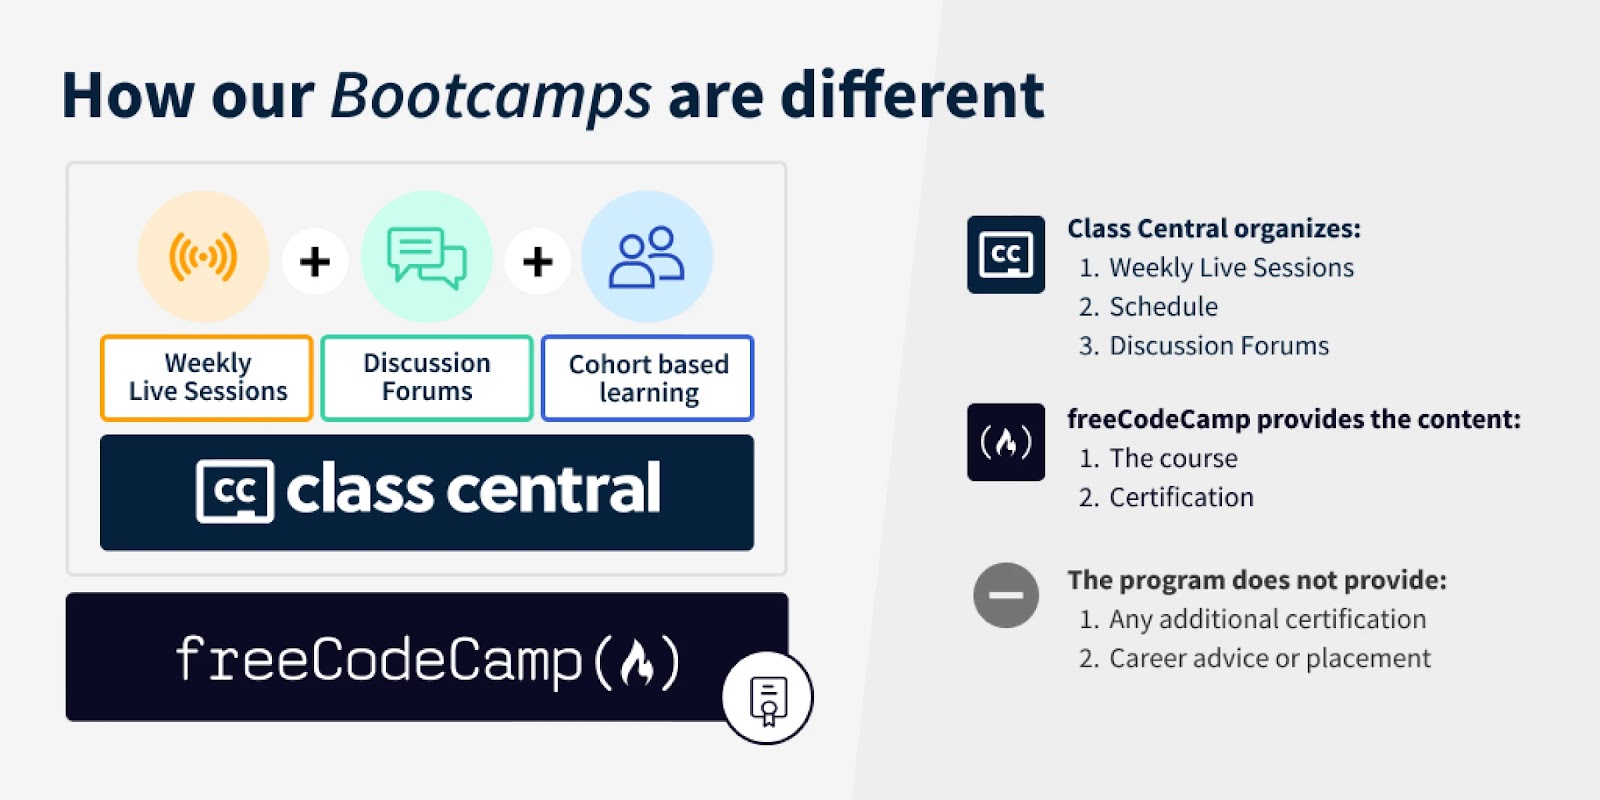 Infografía de freeCodeCamp que muestra el PVU de sus bootcamps con sesiones en vivo, foros y aprendizaje basado en cohortes.